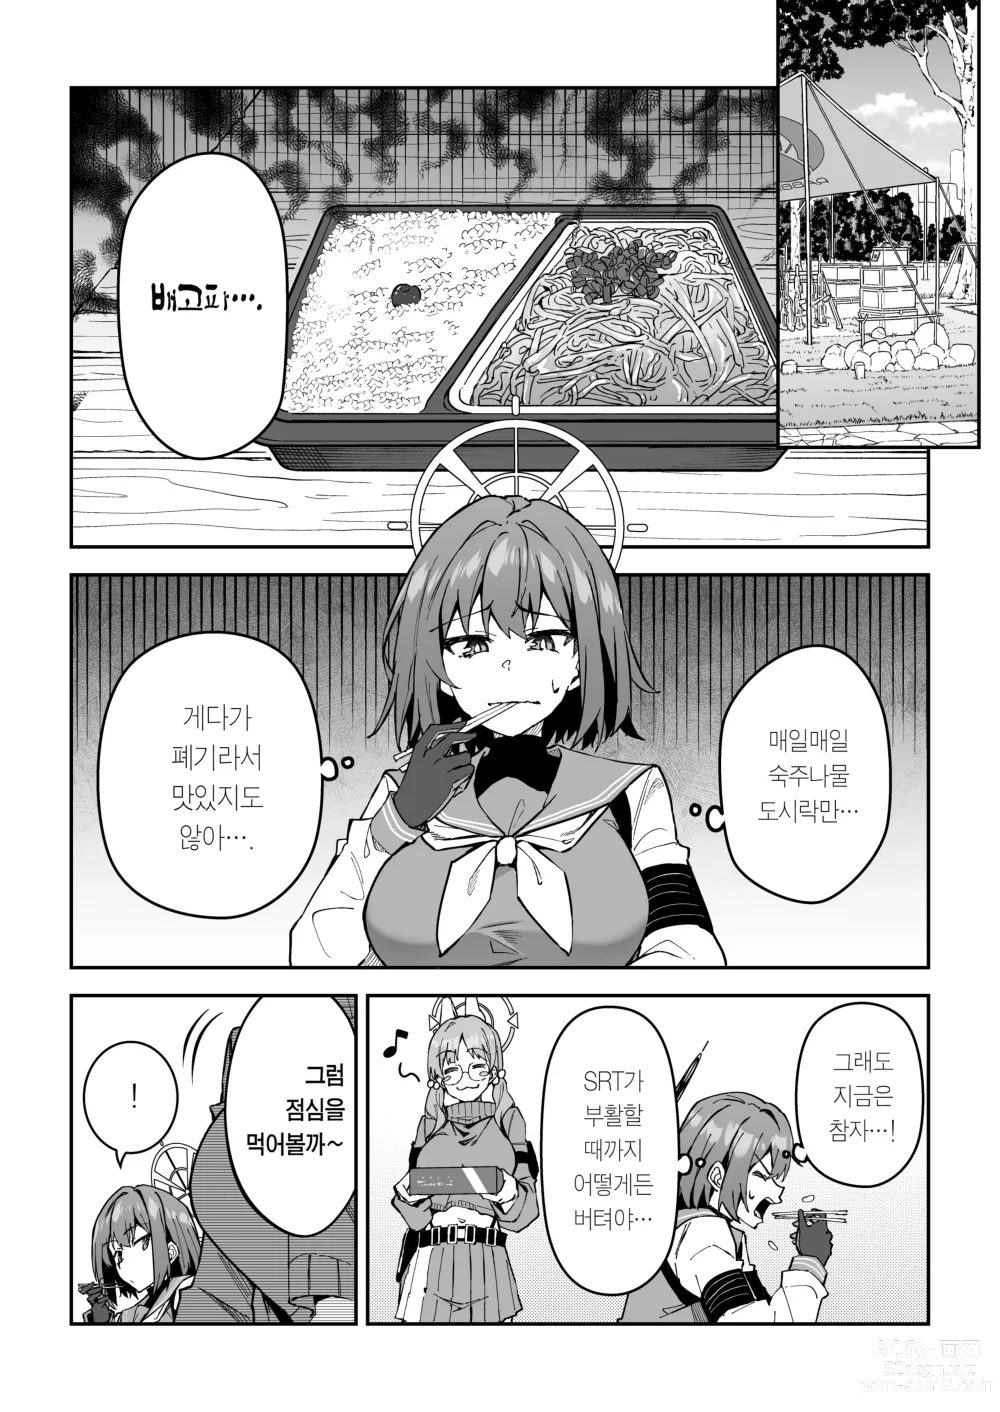 Page 4 of doujinshi 욕정 토끼의 식량 조달 작전